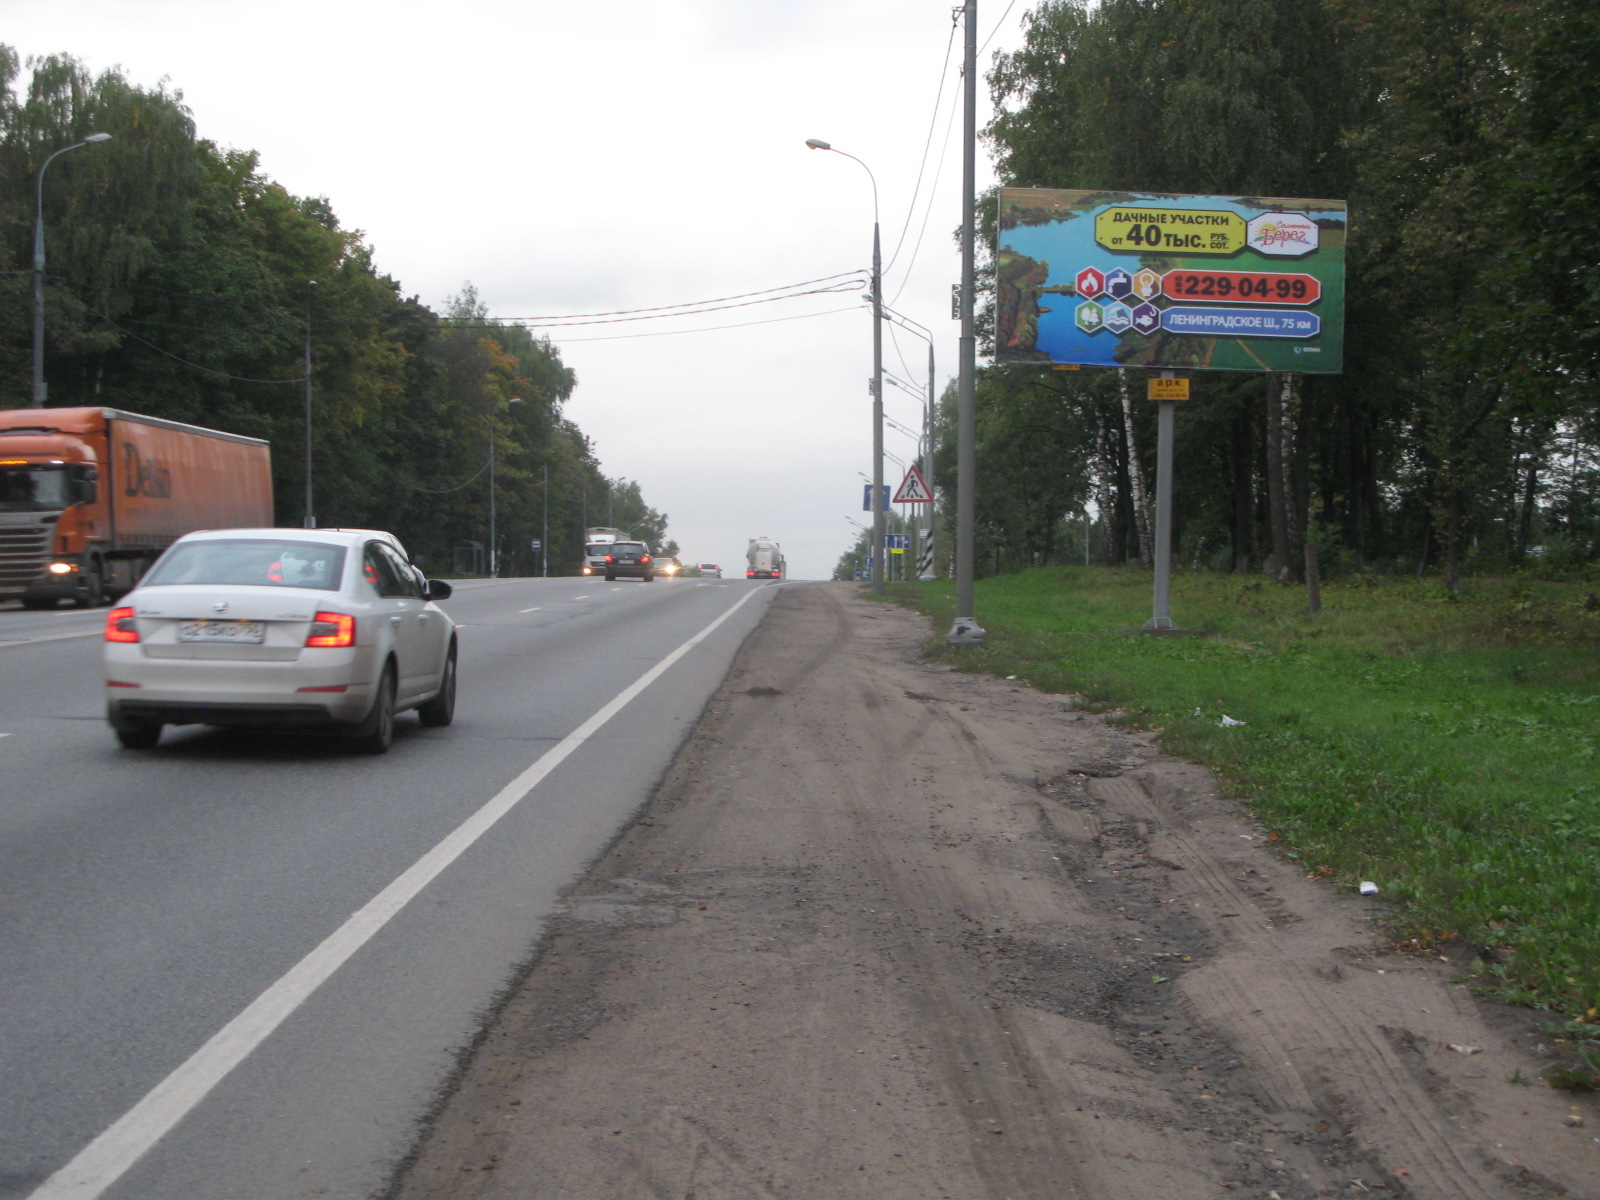 Ленинградское ш., 66,35 км, (47,65 км от МКАД), Красная ул., справа, г.Солнечногорск